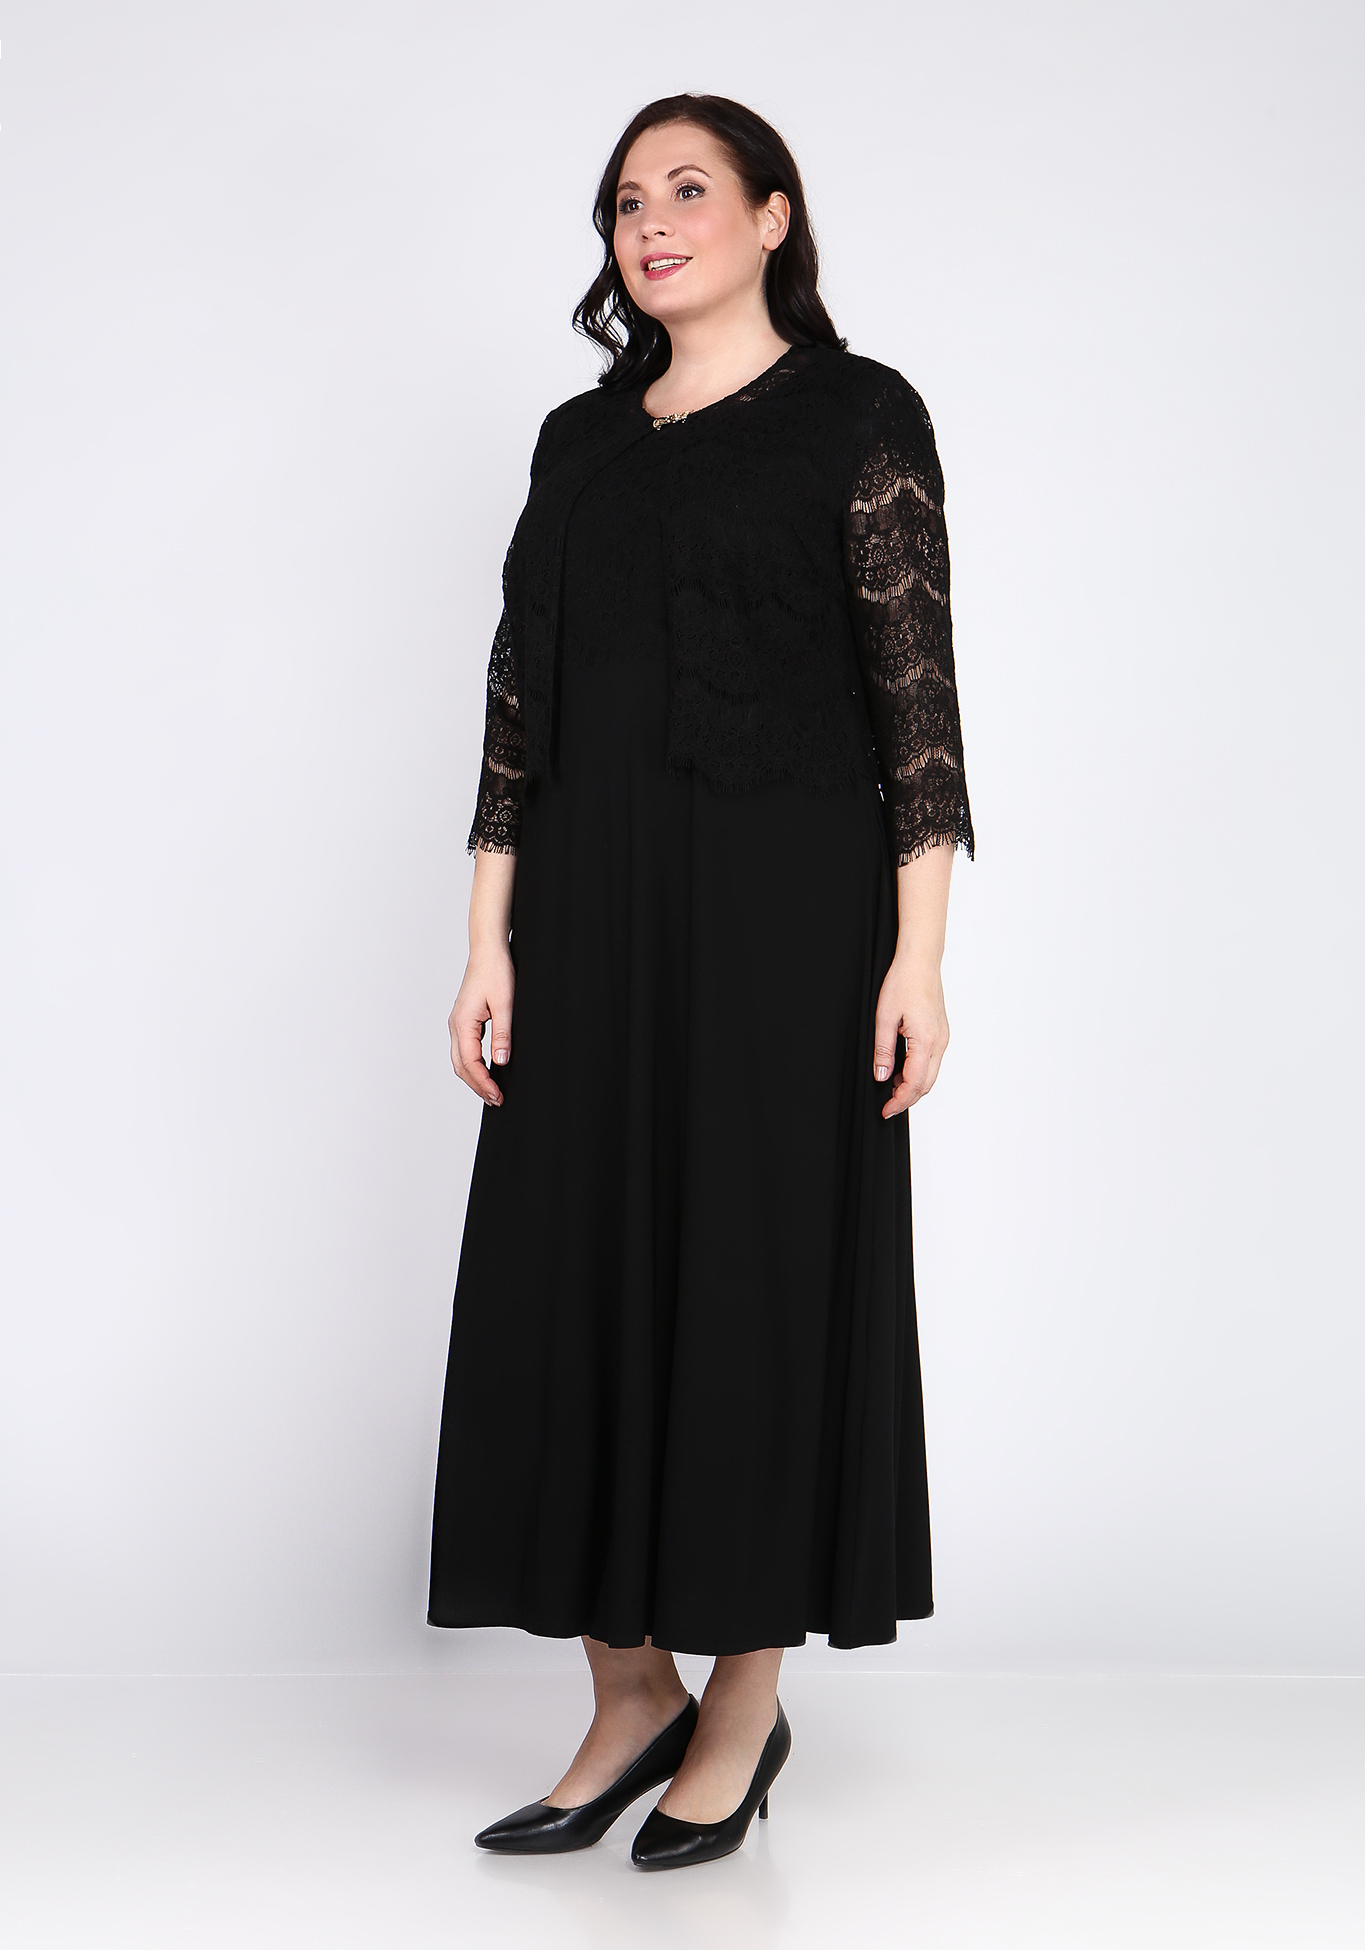 Платье с кардиганом "Люсин" Bel Fiore, размер 50, цвет черный - фото 6